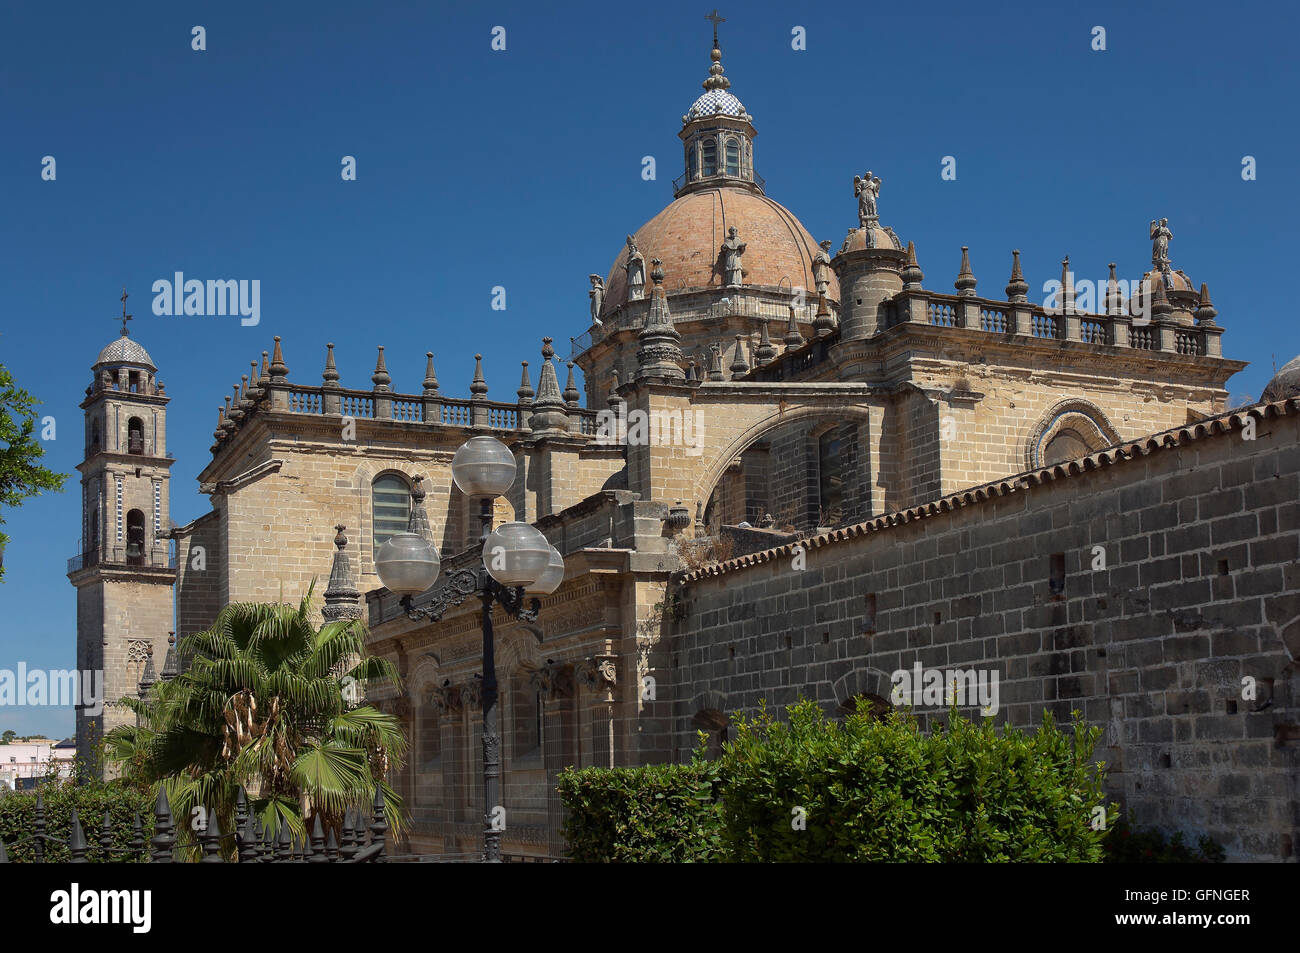 La cathédrale de San Salvador - 17e siècle, Jerez de la Frontera, Cadiz Province, Région d'Andalousie, Espagne, Europe Banque D'Images